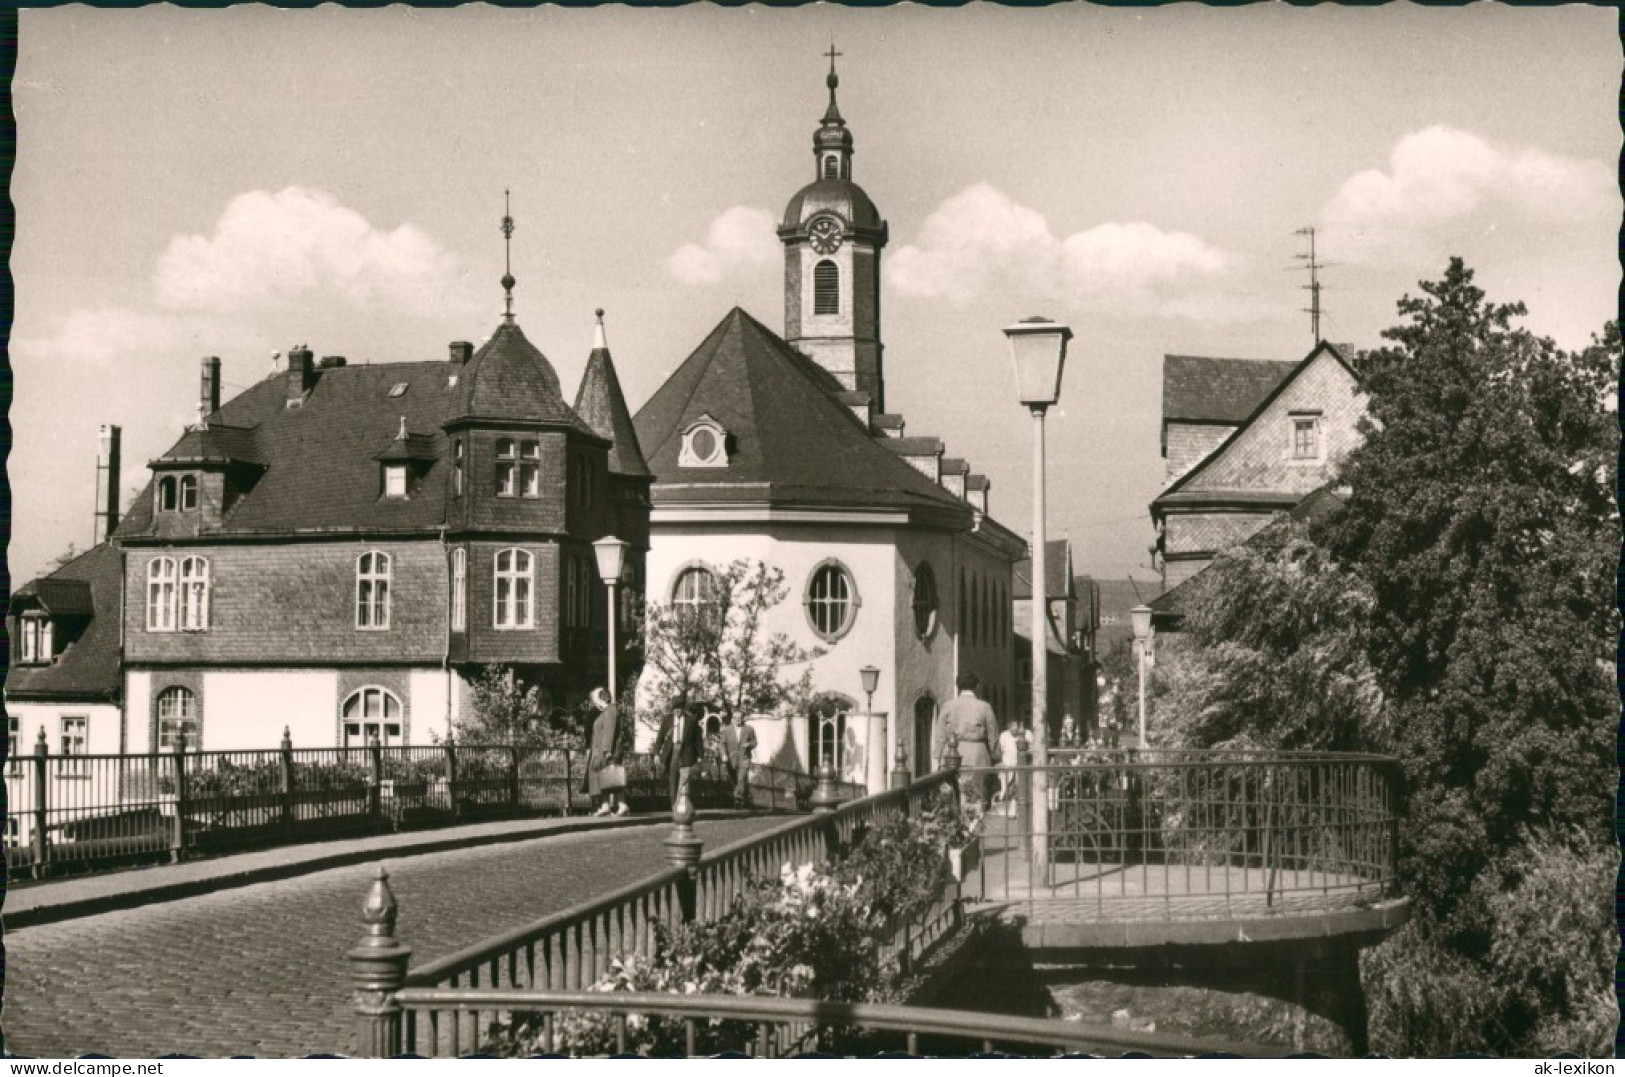 Wetzlar Strassen Partie Mit Hospitalkirche - Alte Lahnbrücke 1960 - Wetzlar